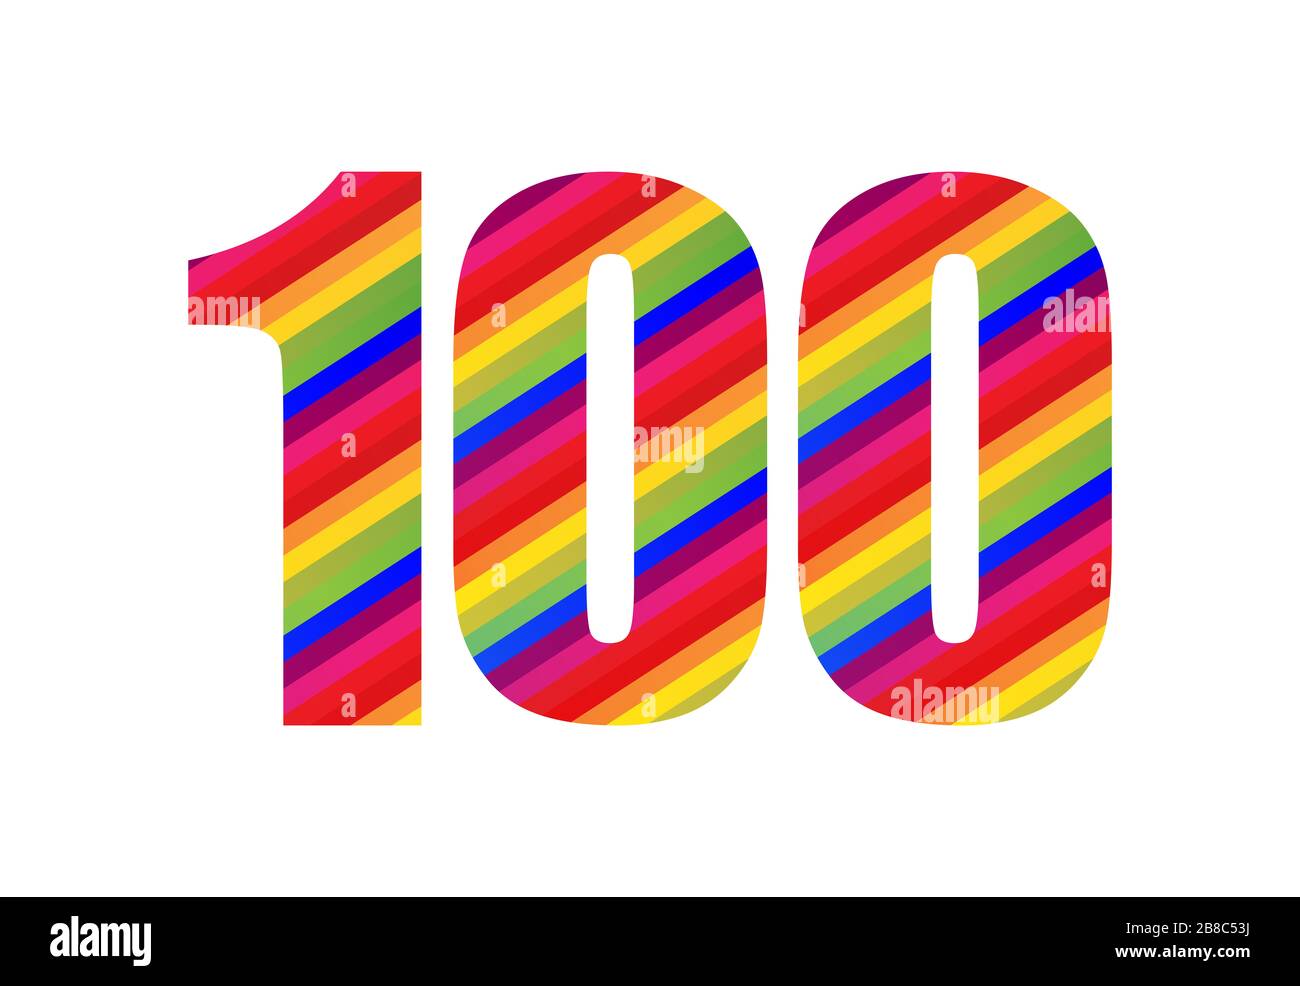 100 Stellige Ziffer Fur Rainbow Style Farbenfrohes Einhundert Zahliger Vektorgrafik Design Isoliert Auf Weissem Hintergrund Stockfotografie Alamy